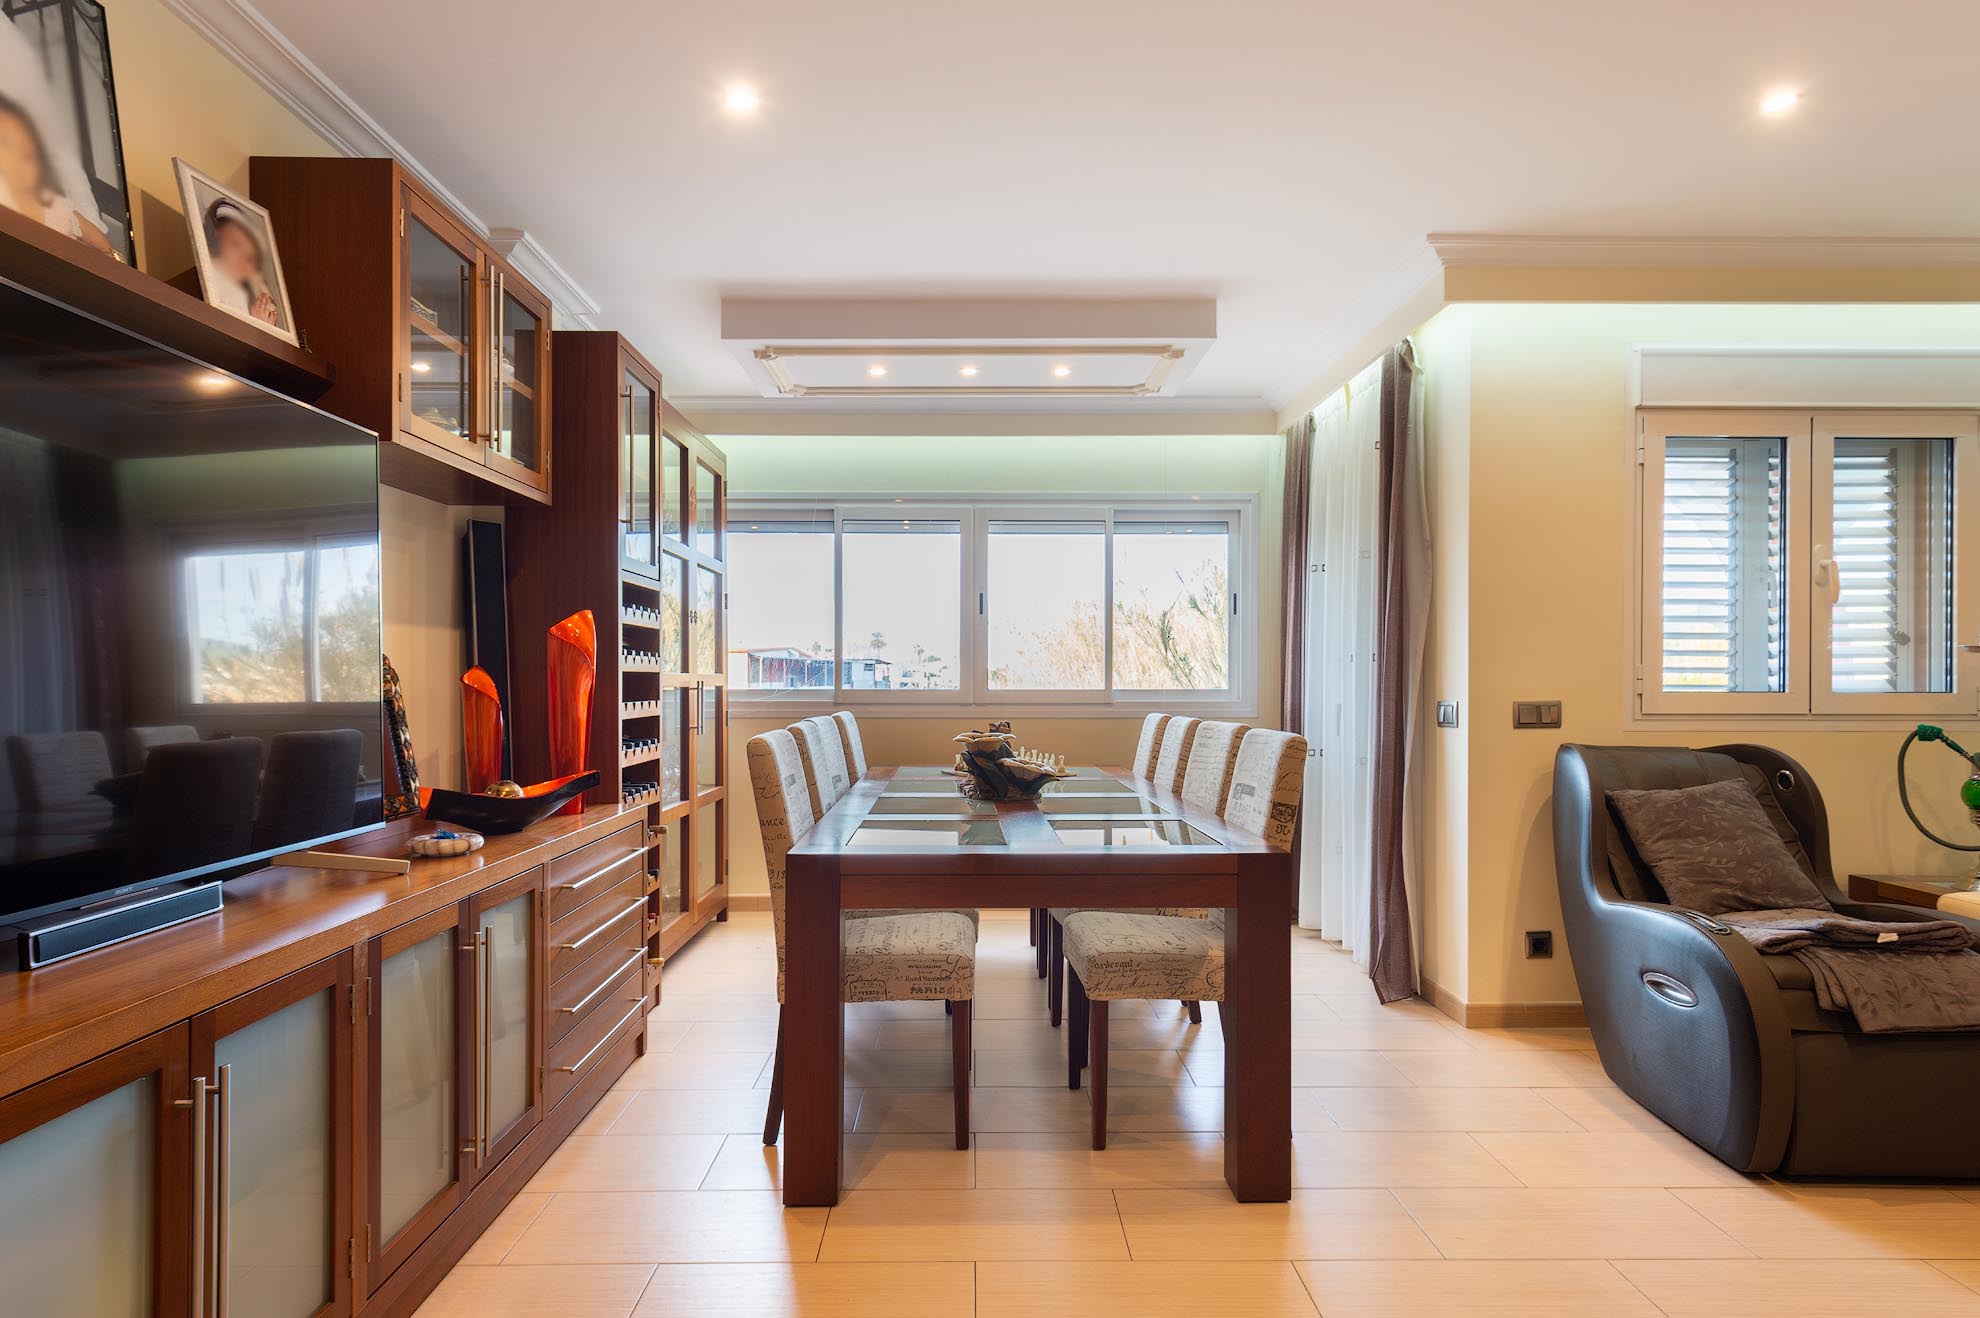 Apartamento de 3 dormitorios en venta en el edificio Brisol, Ibiza